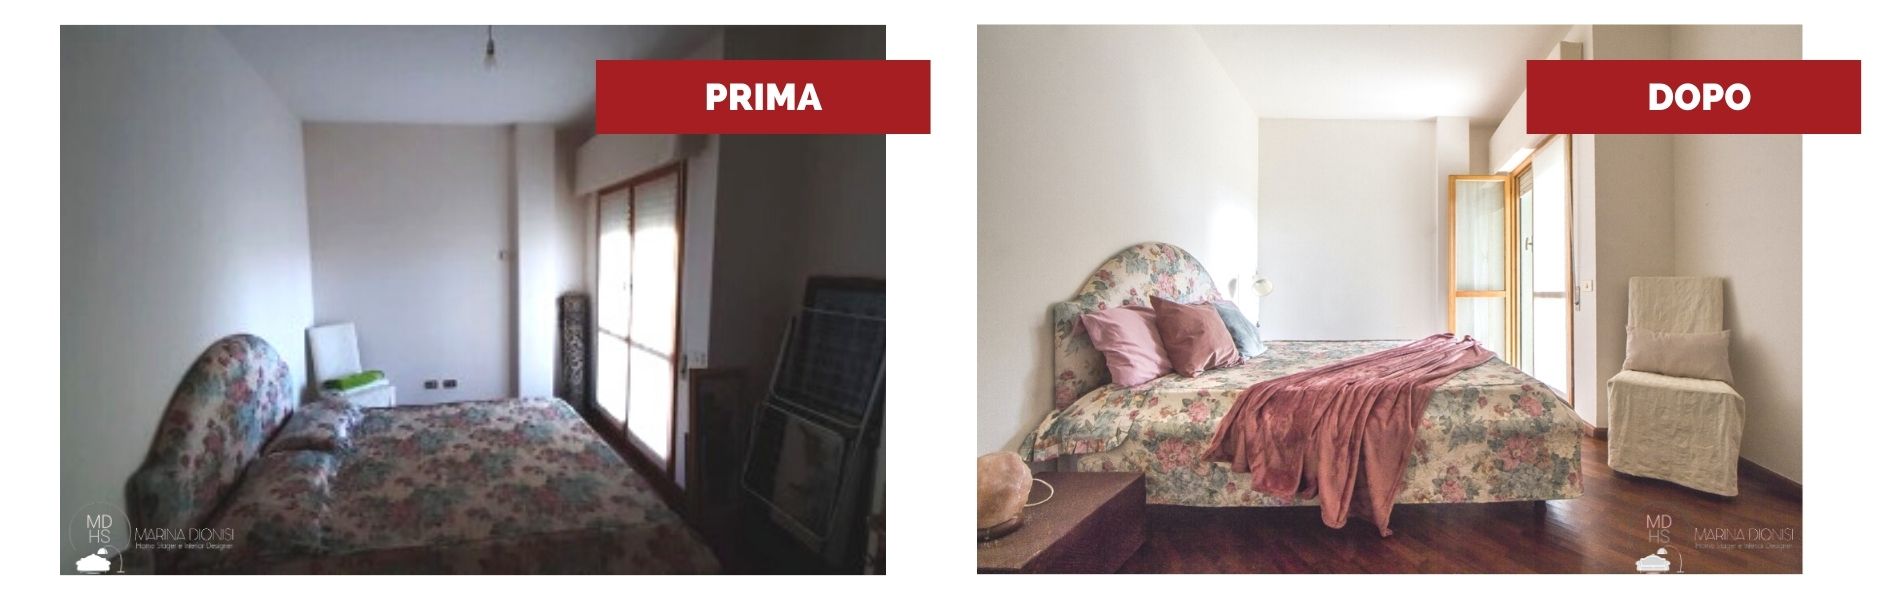 Home staging con Marina Dionisi: camera da letto prima e dopo